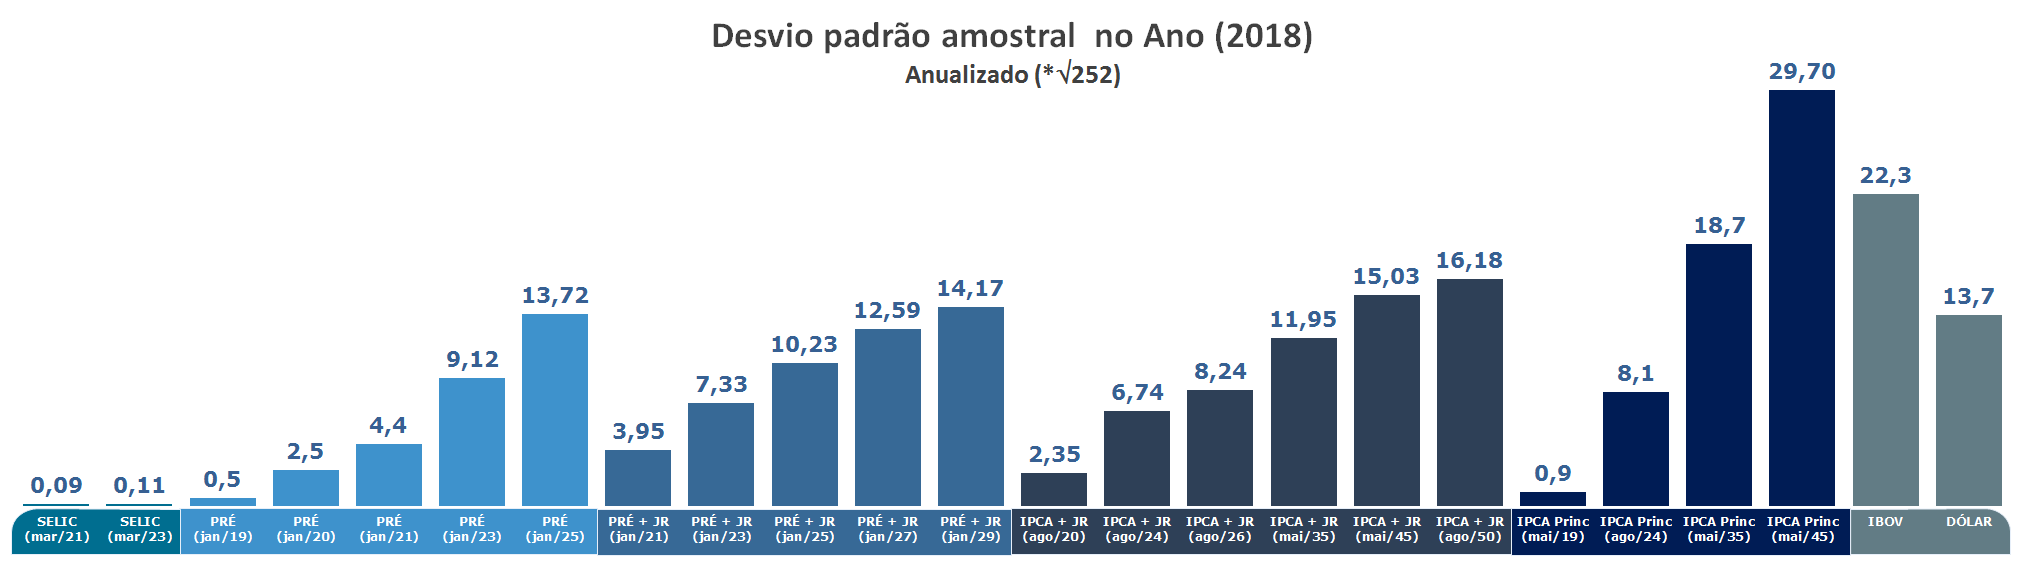 Gráfico de Volatilidade 252 anualizada (Risco de Mercado) do Tesouro Direto em 2018 Ibovespa e Dólar